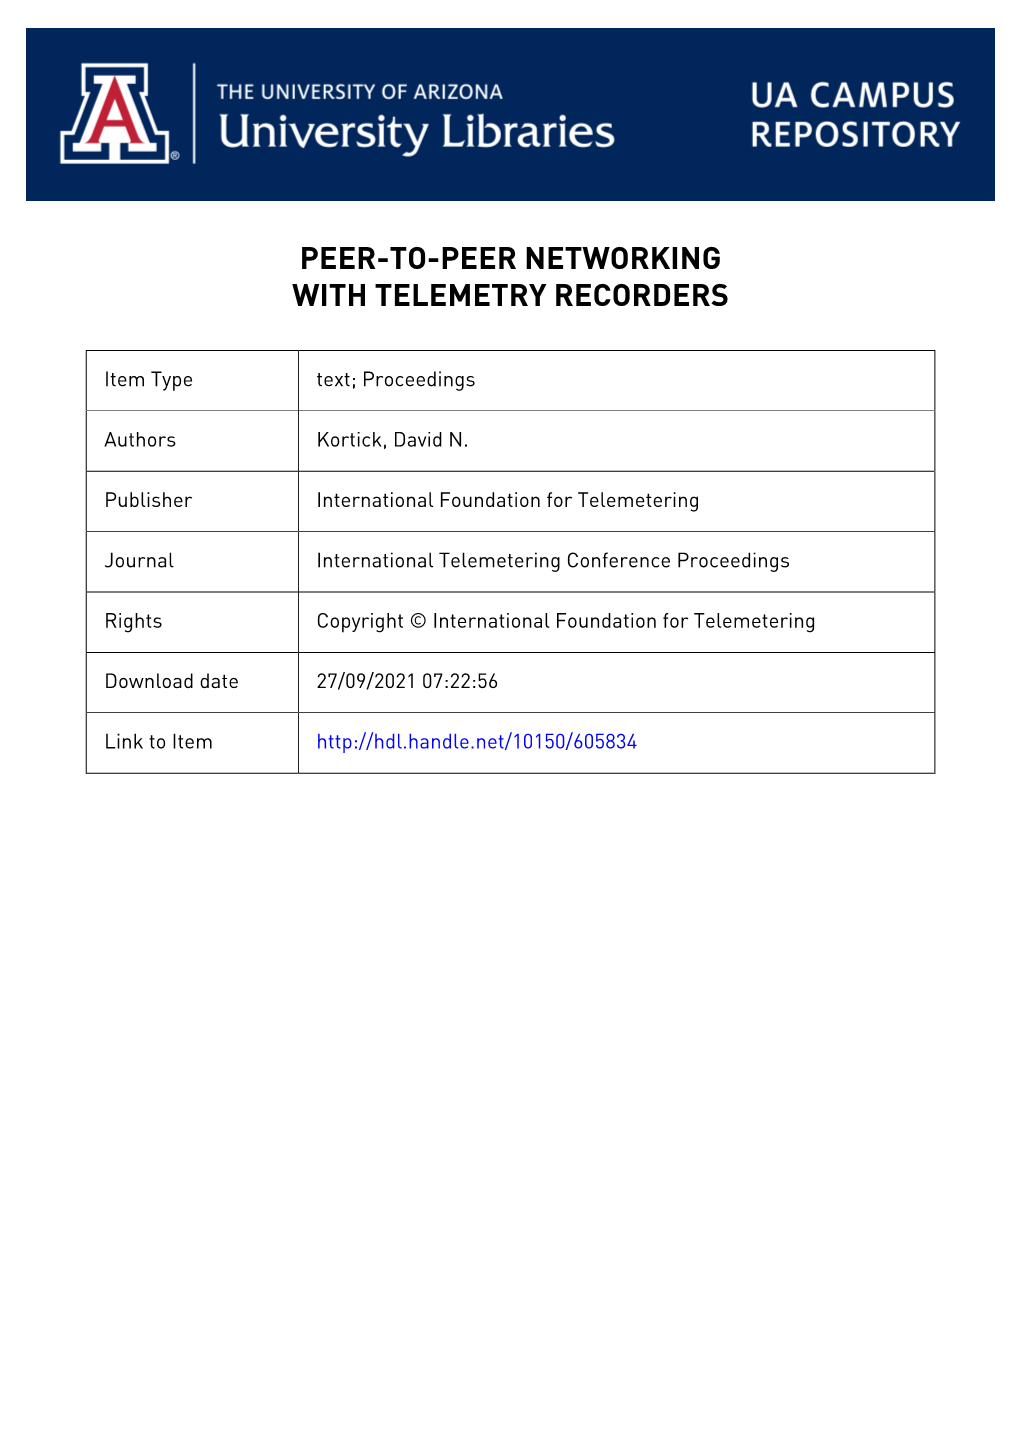 Peer-To-Peer Networking with Telemetry Recorders